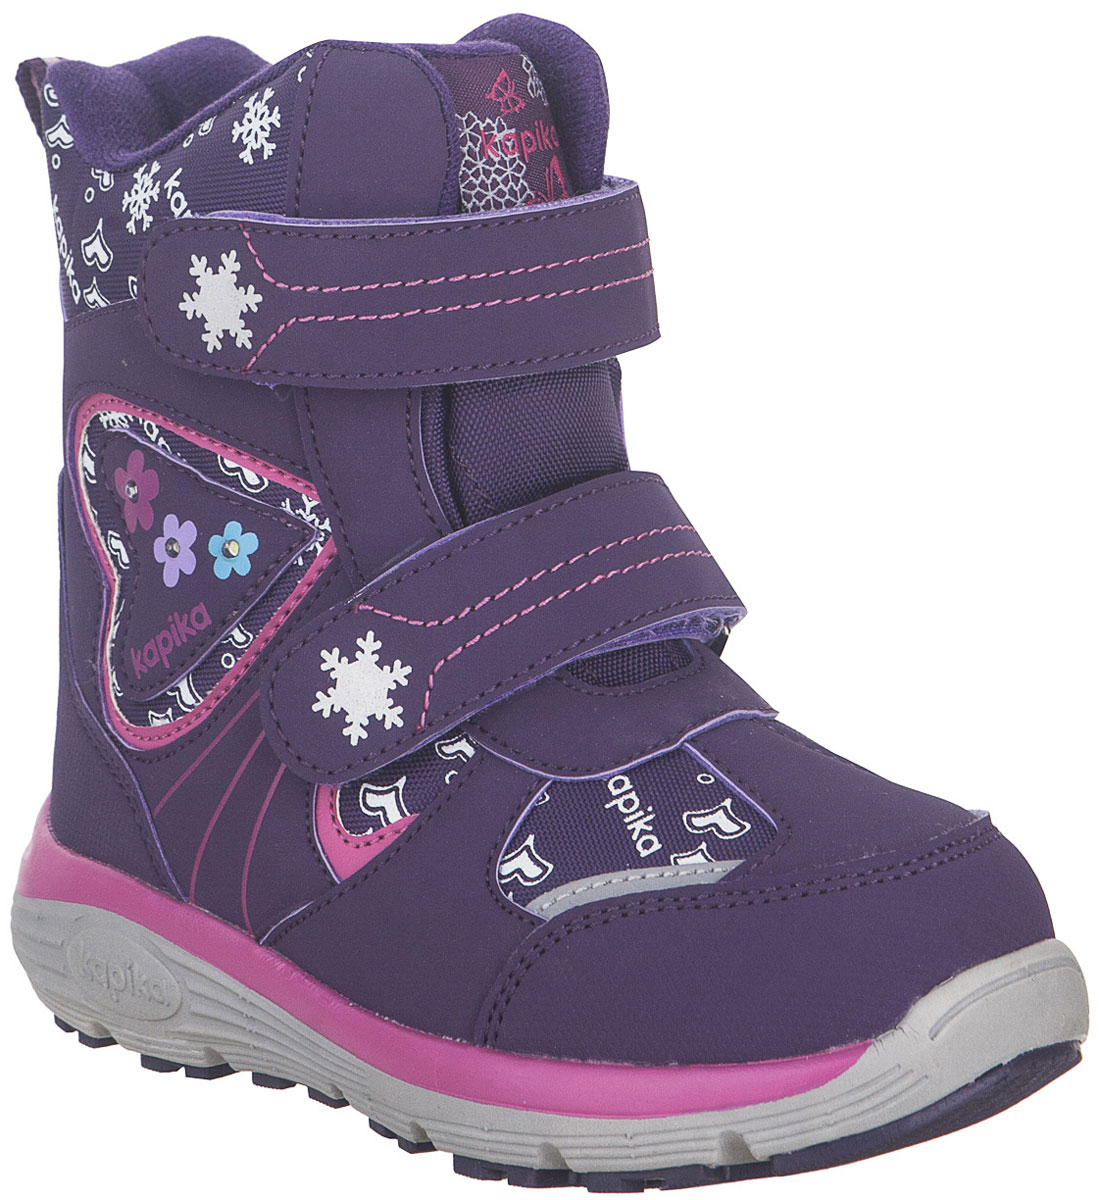 Ботинки для девочки Kapika, цвет: фиолетовый. 42256-2. Размер 31